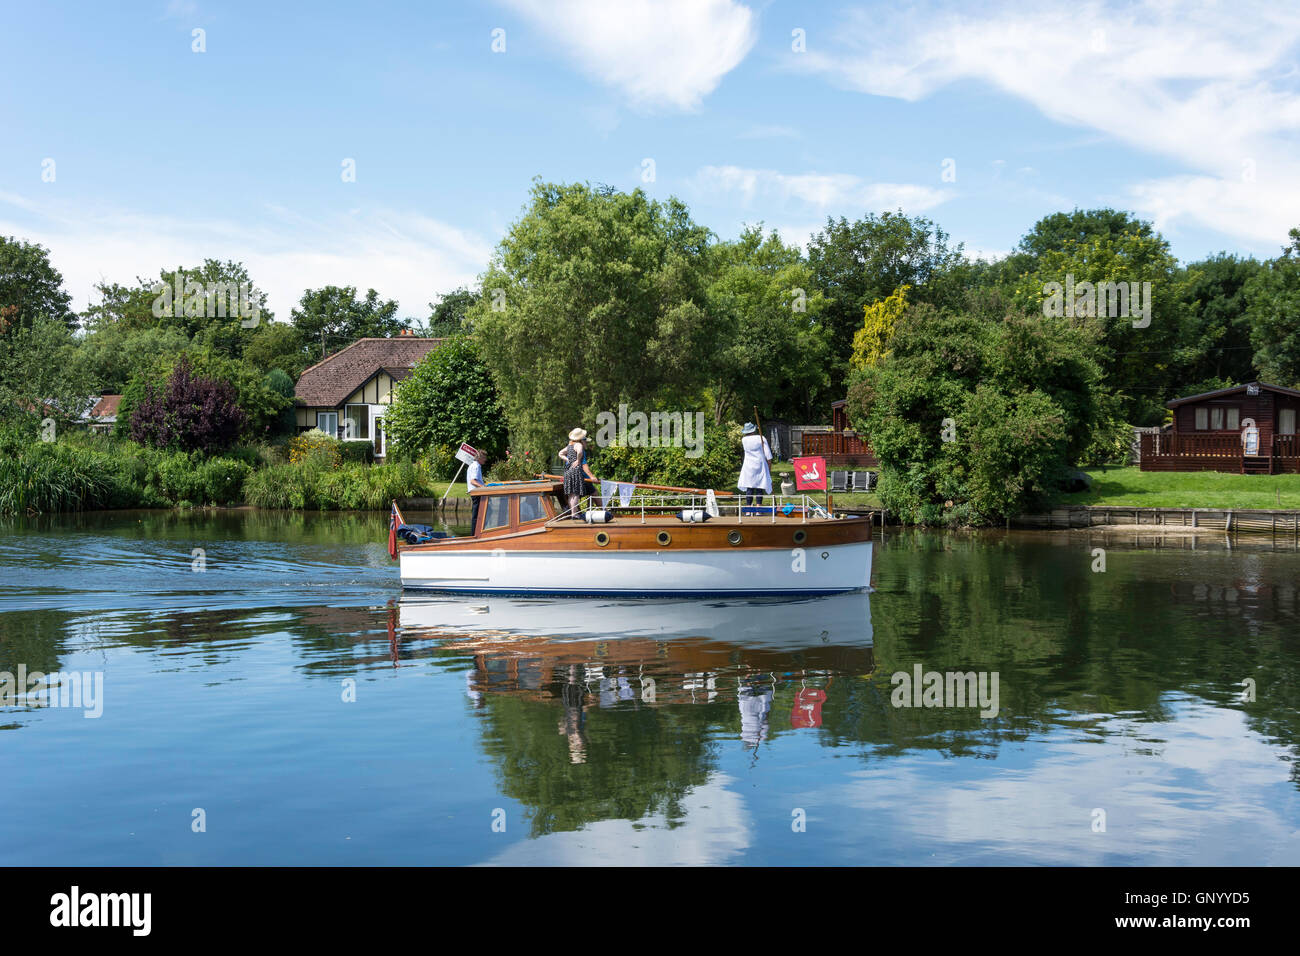 Swan Augmenter bateau sur la rivière Thames, à Laleham Lalham, atteindre, Surrey, Angleterre, Royaume-Uni Banque D'Images